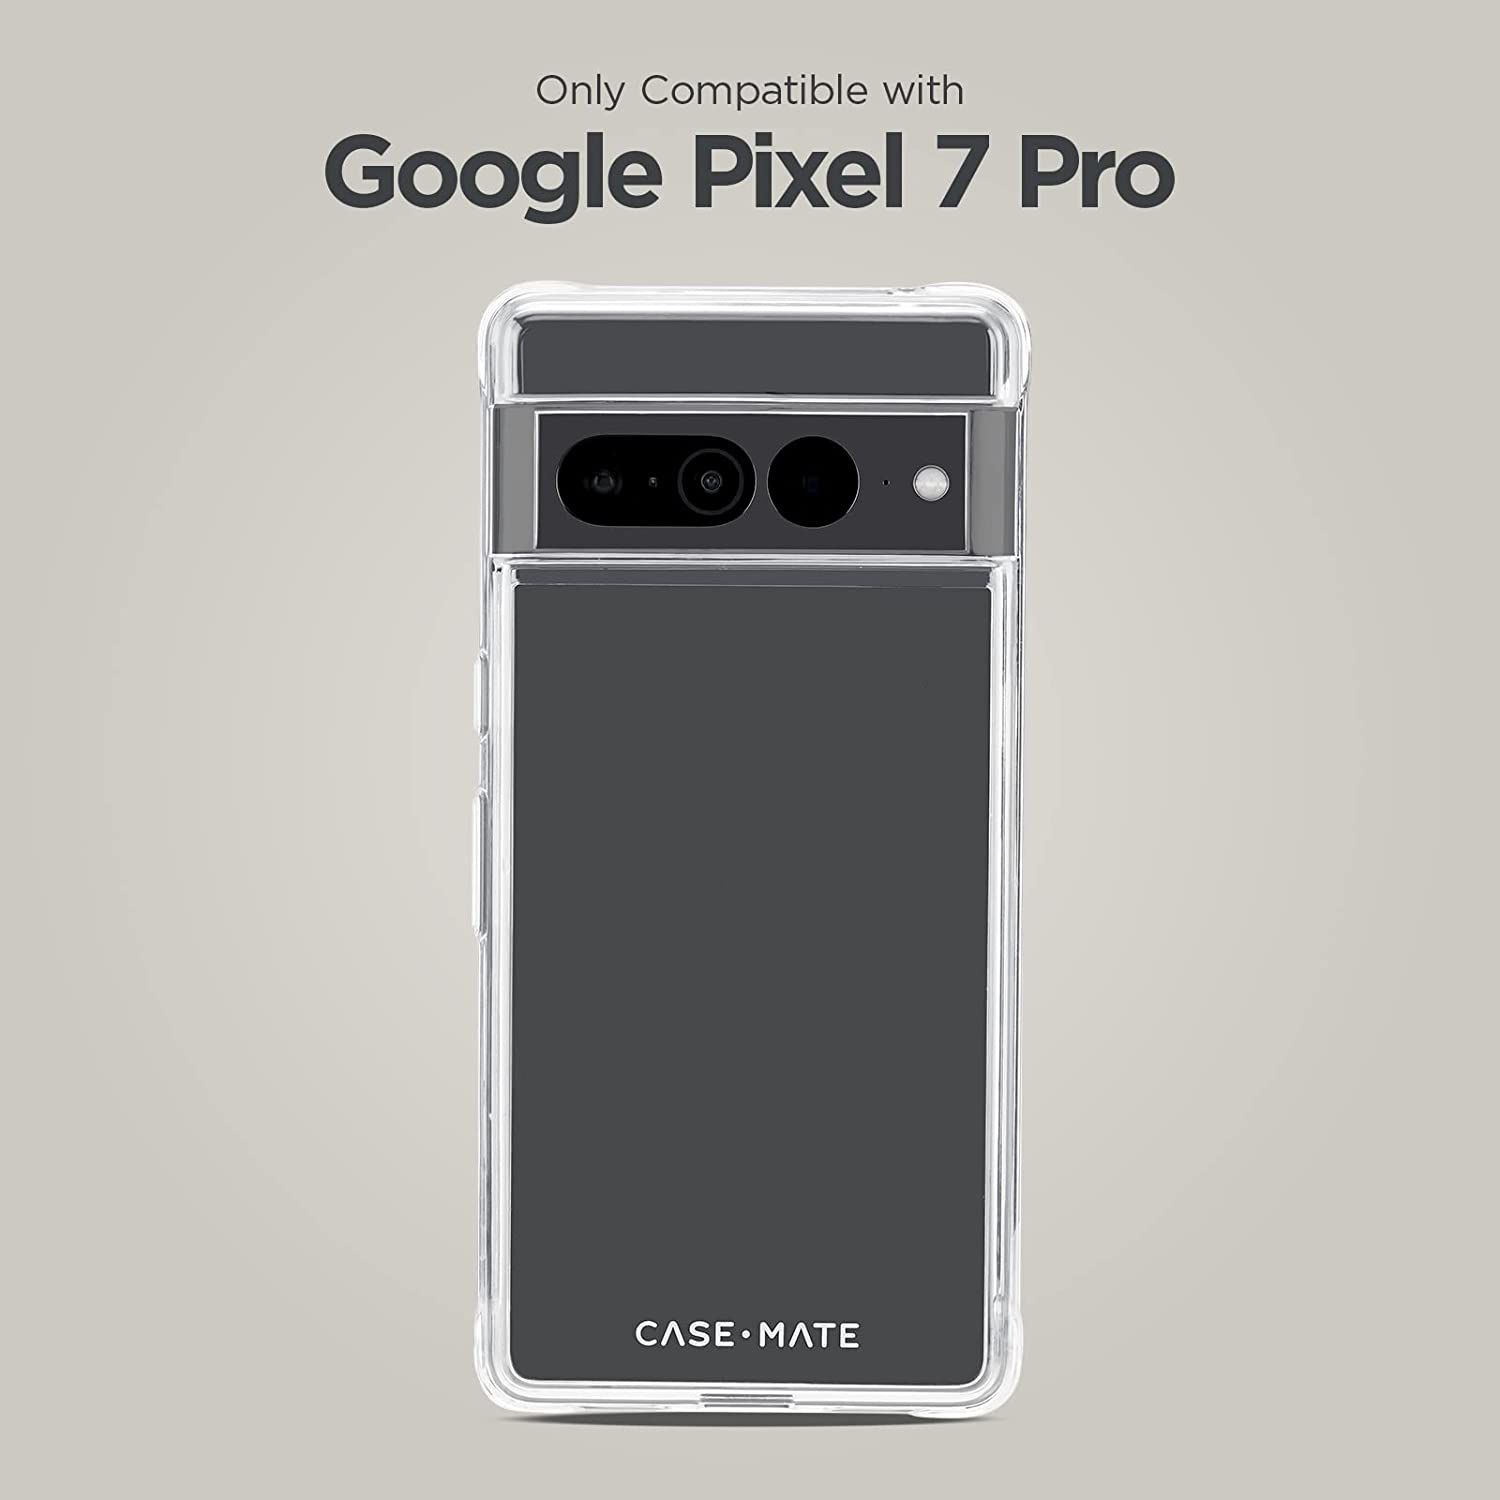 CASE-MATE Tough Clear, Pro, Backcover, Pixel 7 Google, Transparent